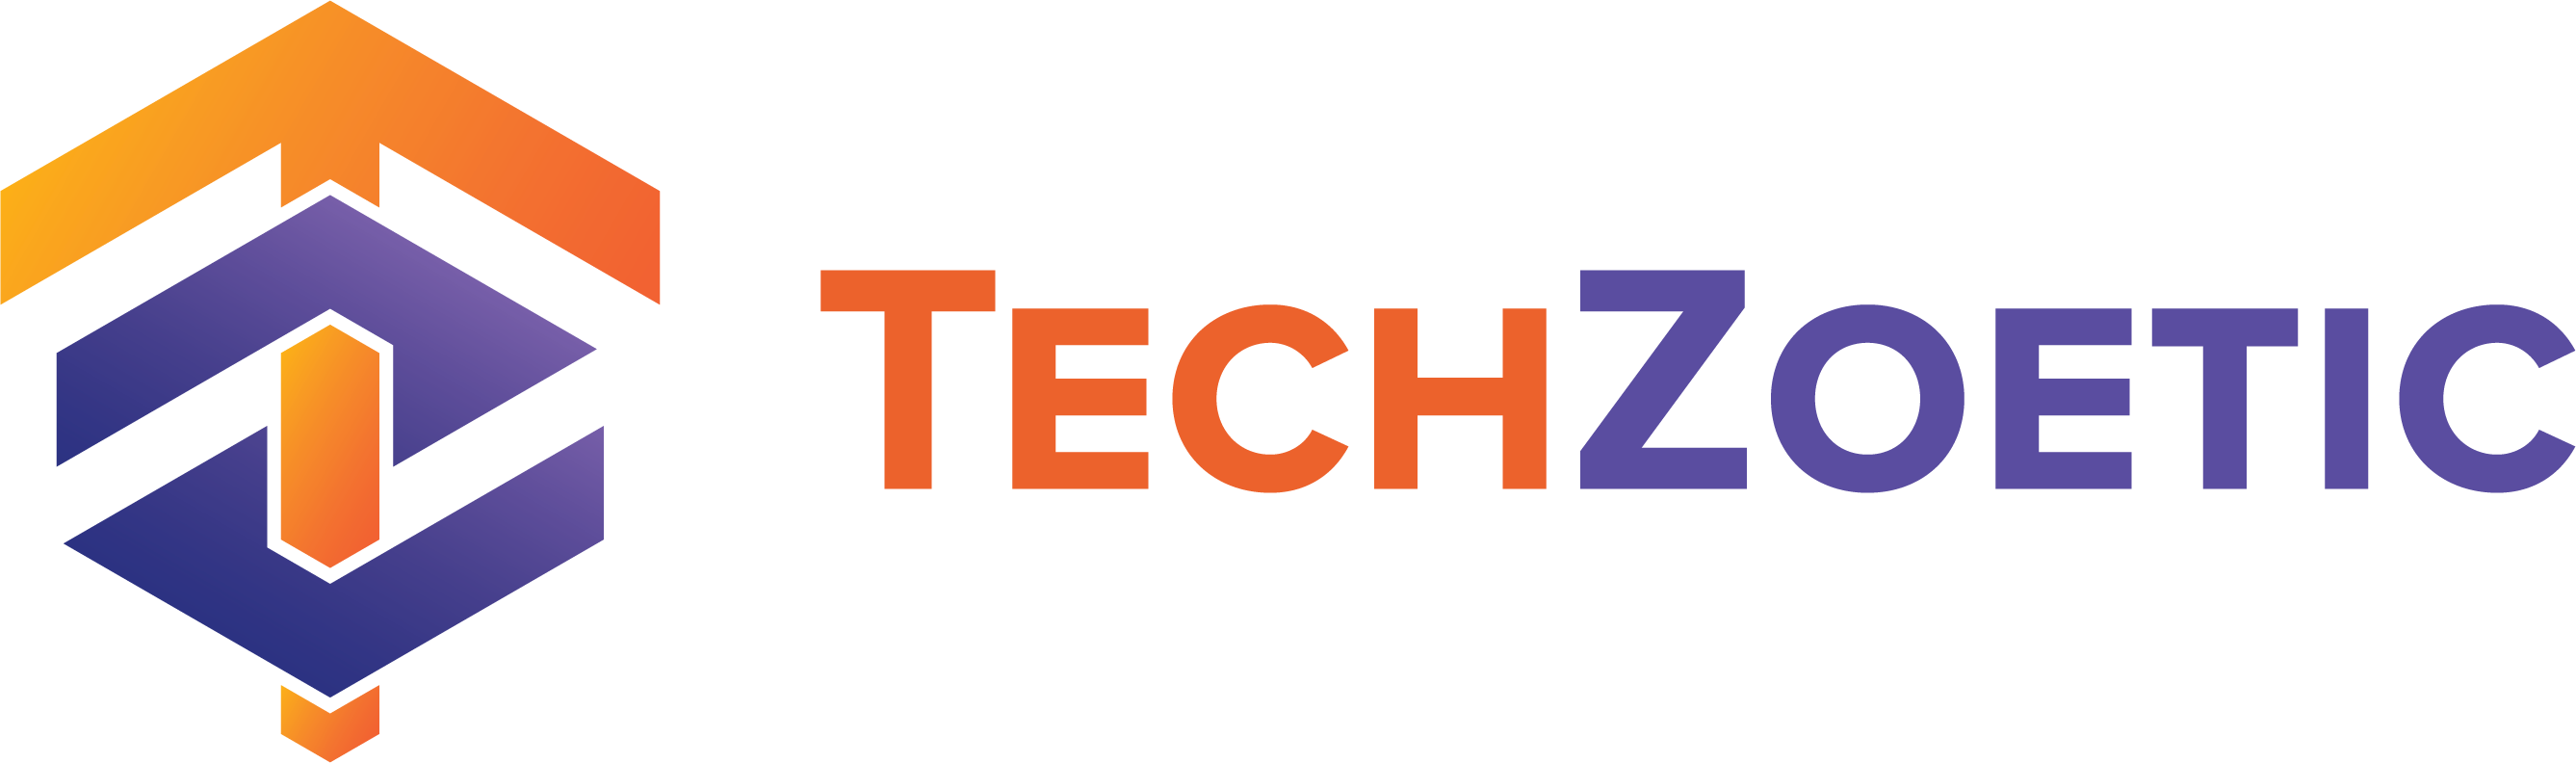 TechZoetic